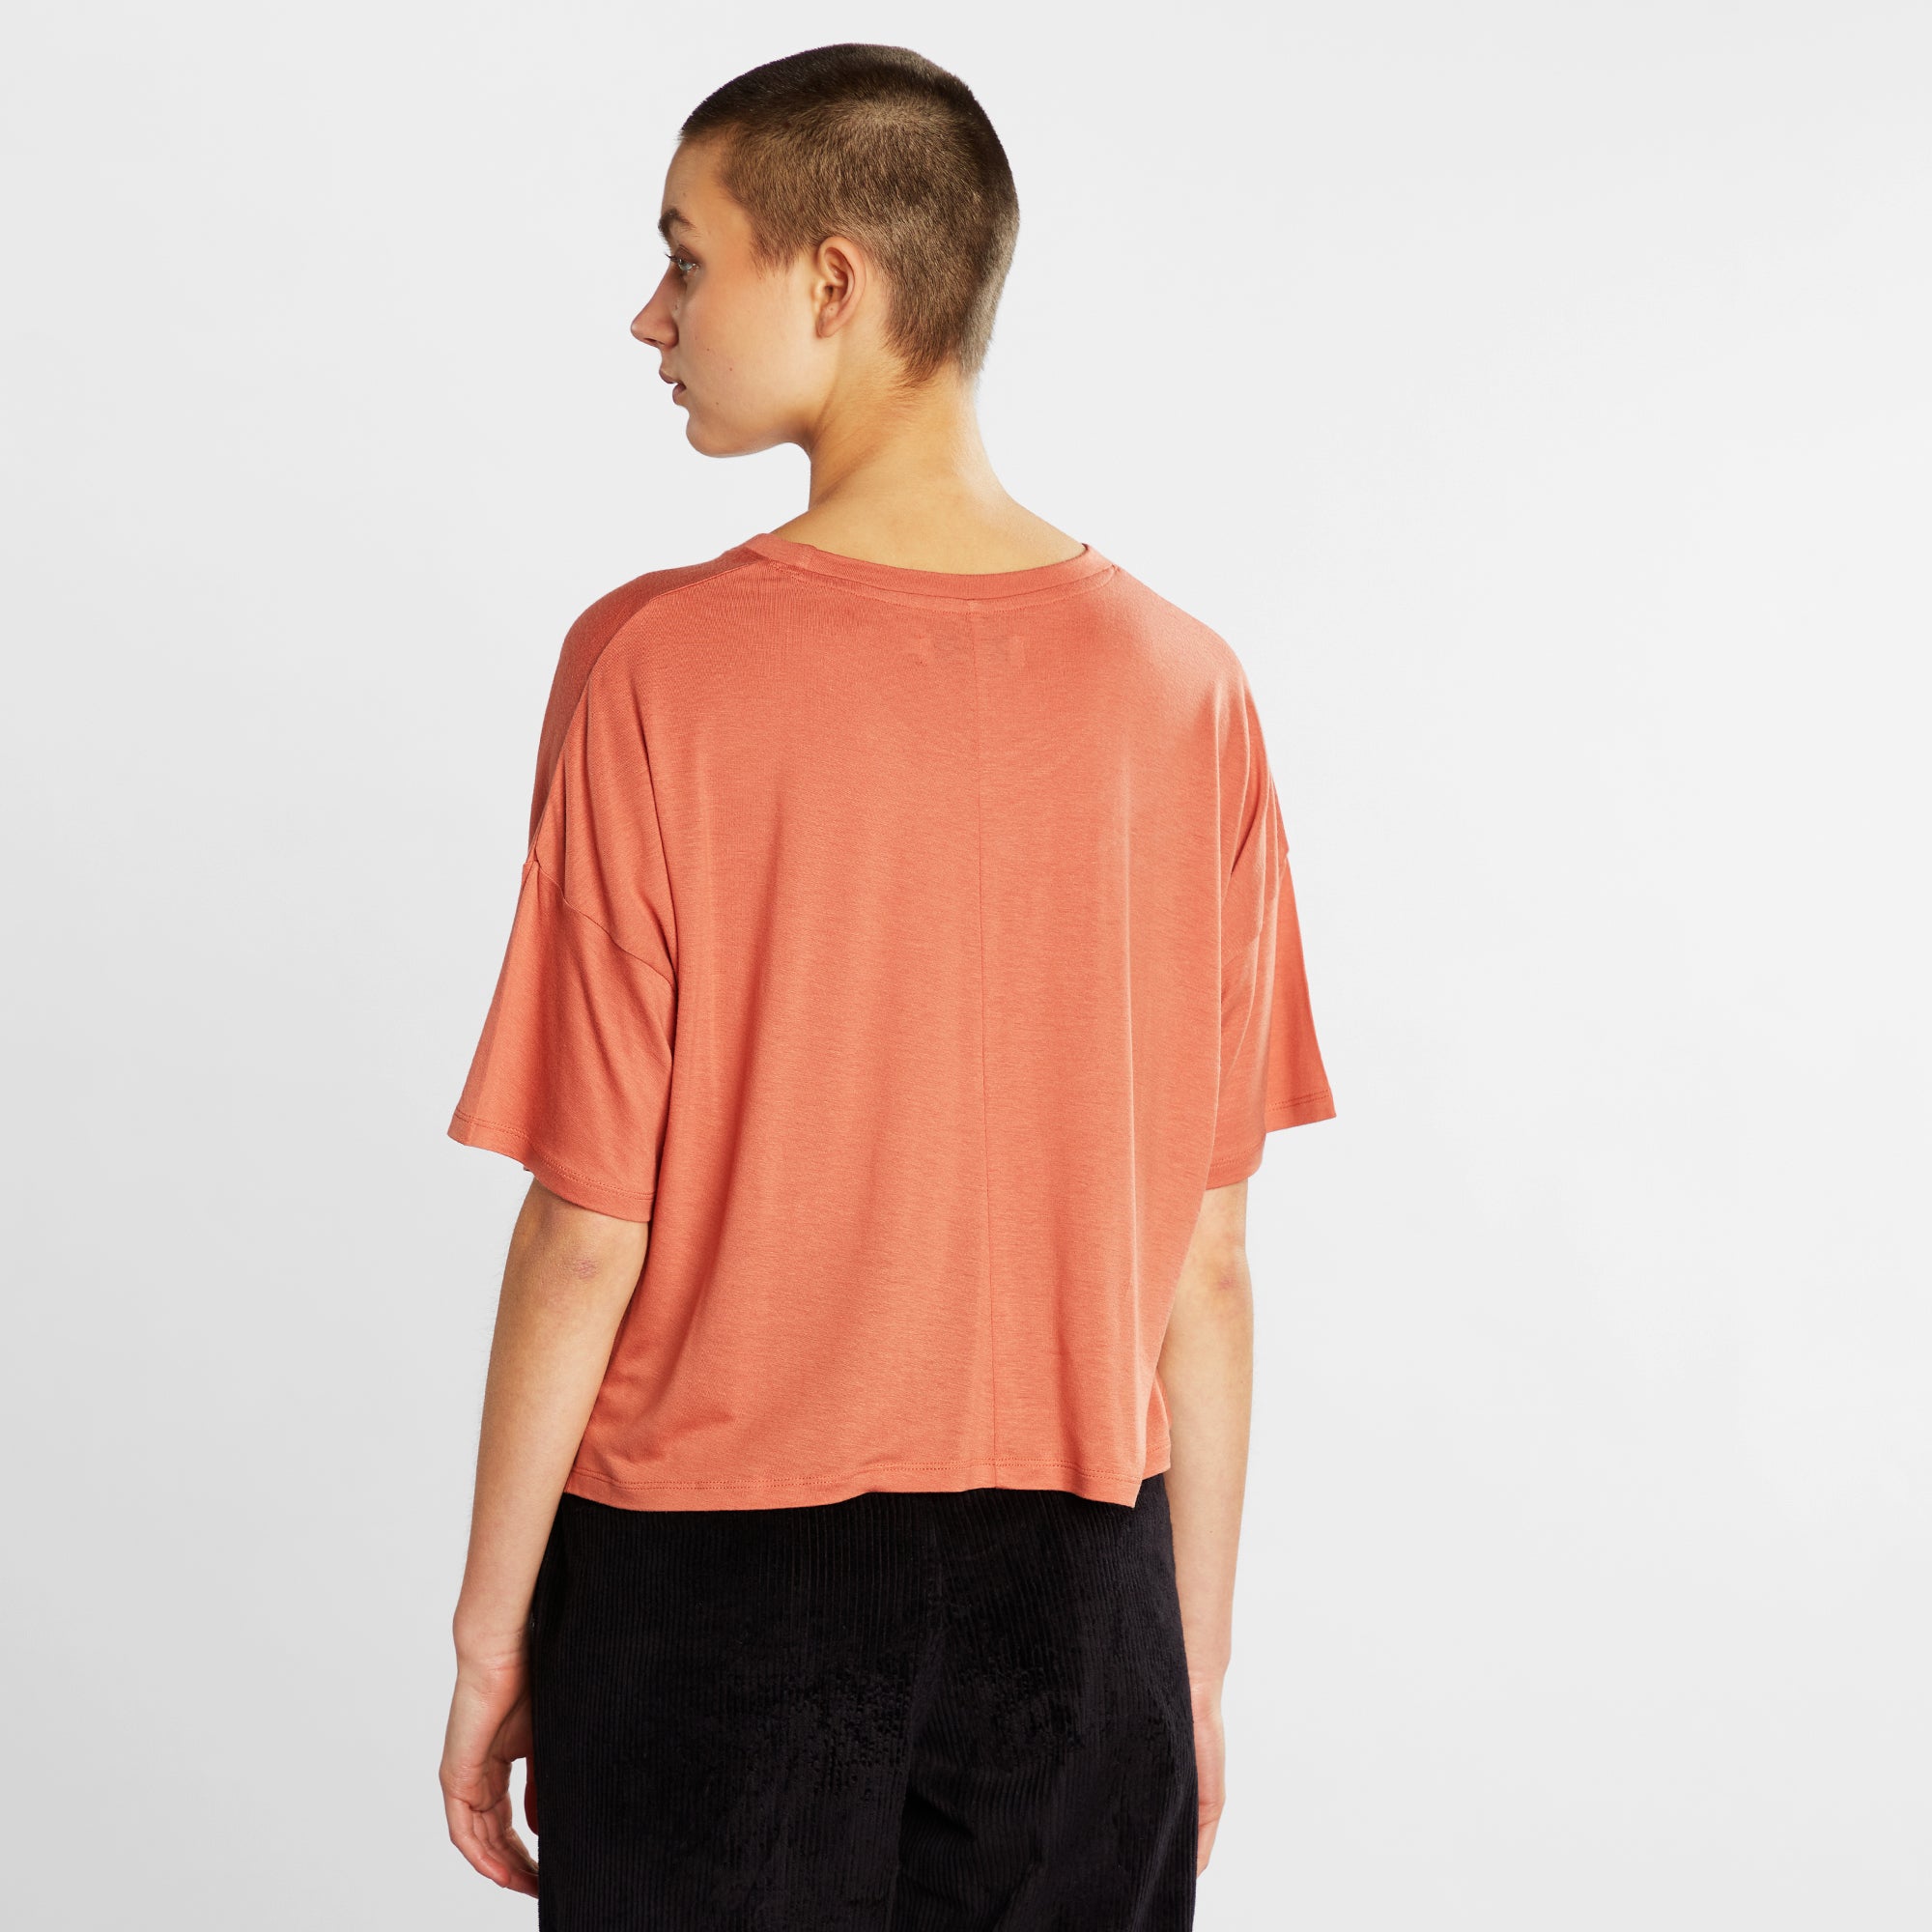 Lightweight T-shirt made of TENCEL - terracotta colors